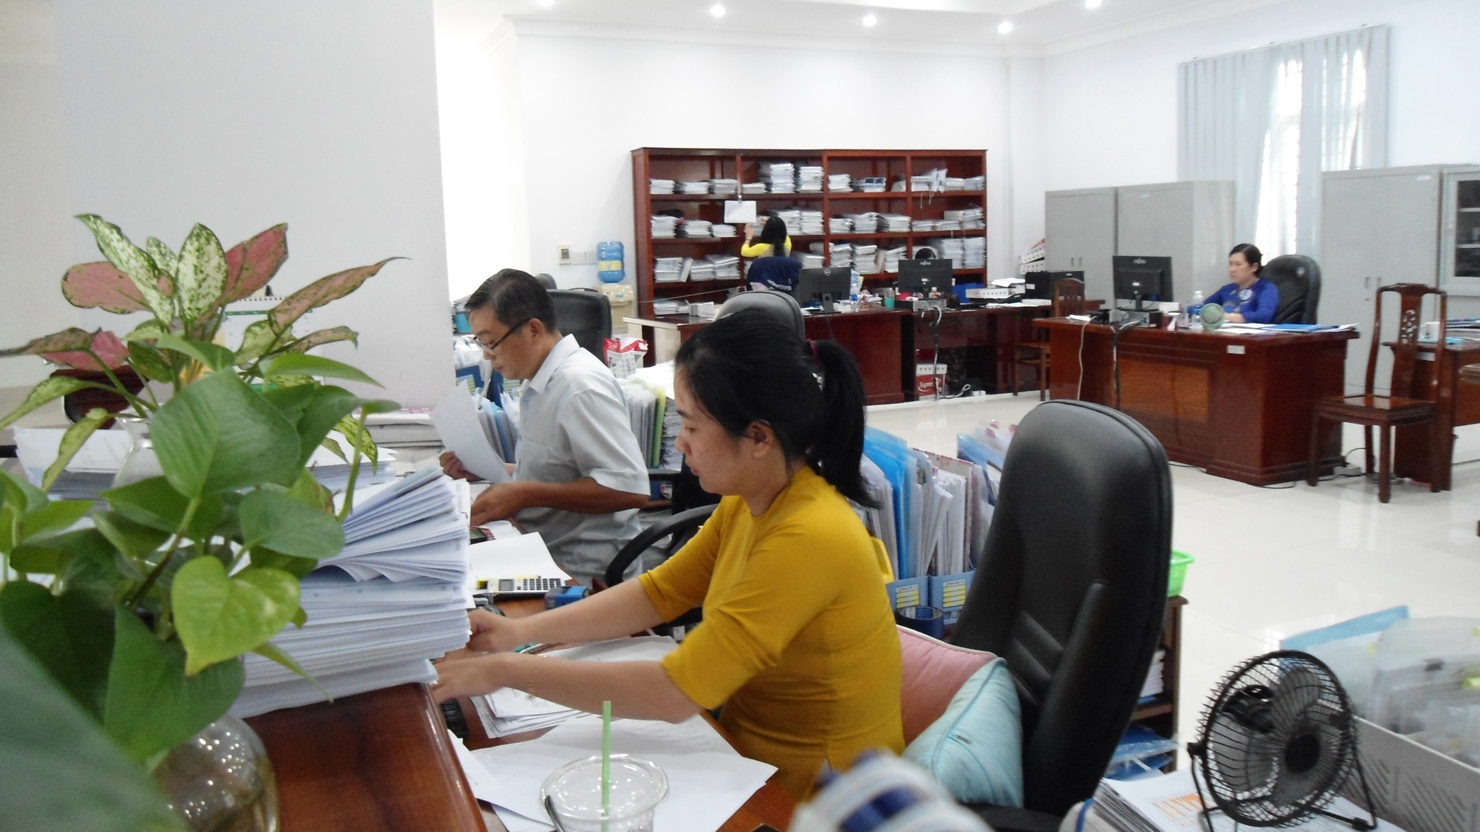 KBNN Kiên Giang thường xuyên thực hiện các giải pháp nâng cao chất lượng phục vụ, mức độ hài lòng của người dân, doanh nghiệp. Ảnh: Thùy Linh.